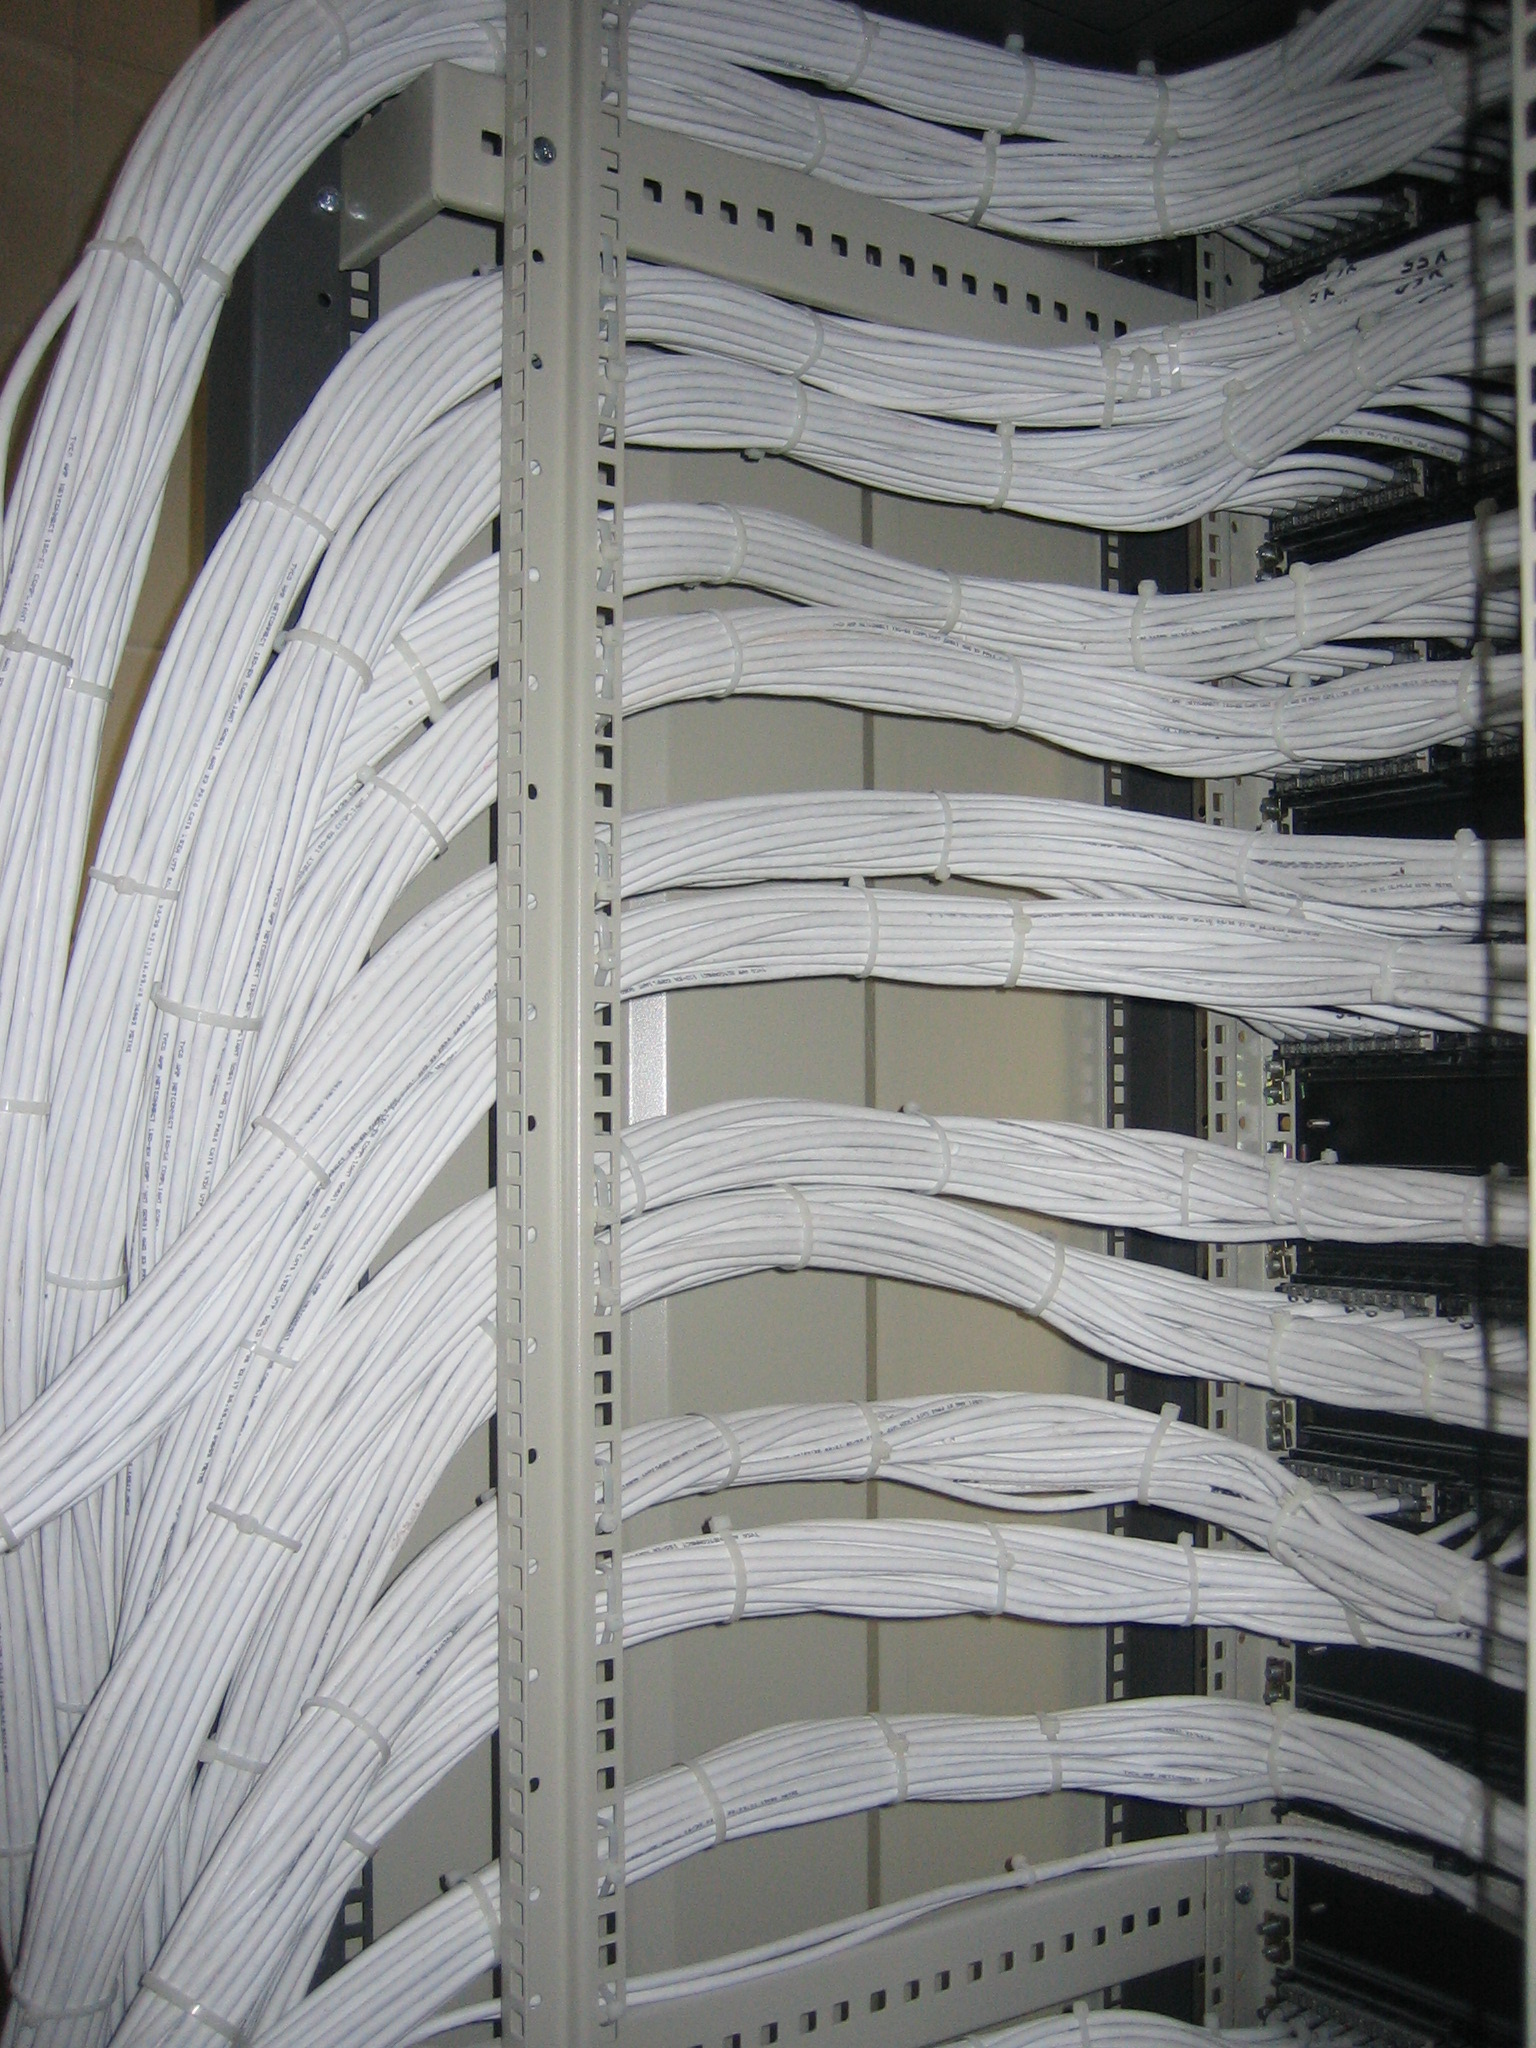 473Συστήματα Δομημένης Καλωδίωσης, με UTP, FTP, STP και Fiber Optic τεχνολογία